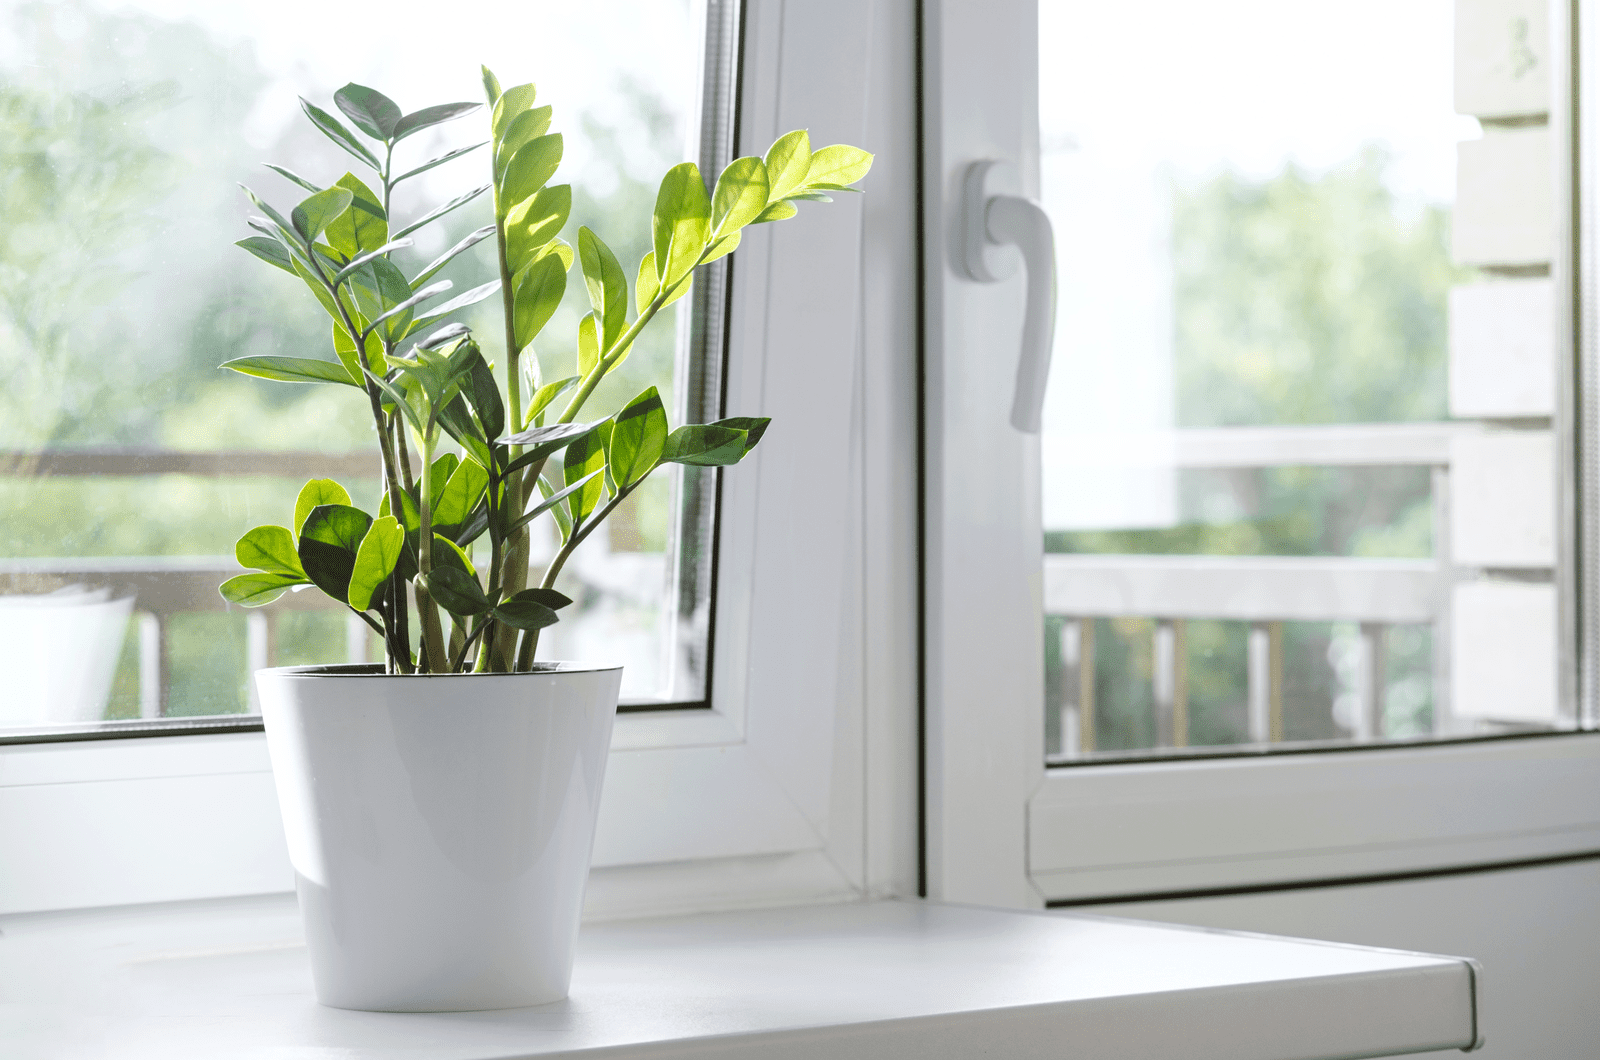 zz plant by a window